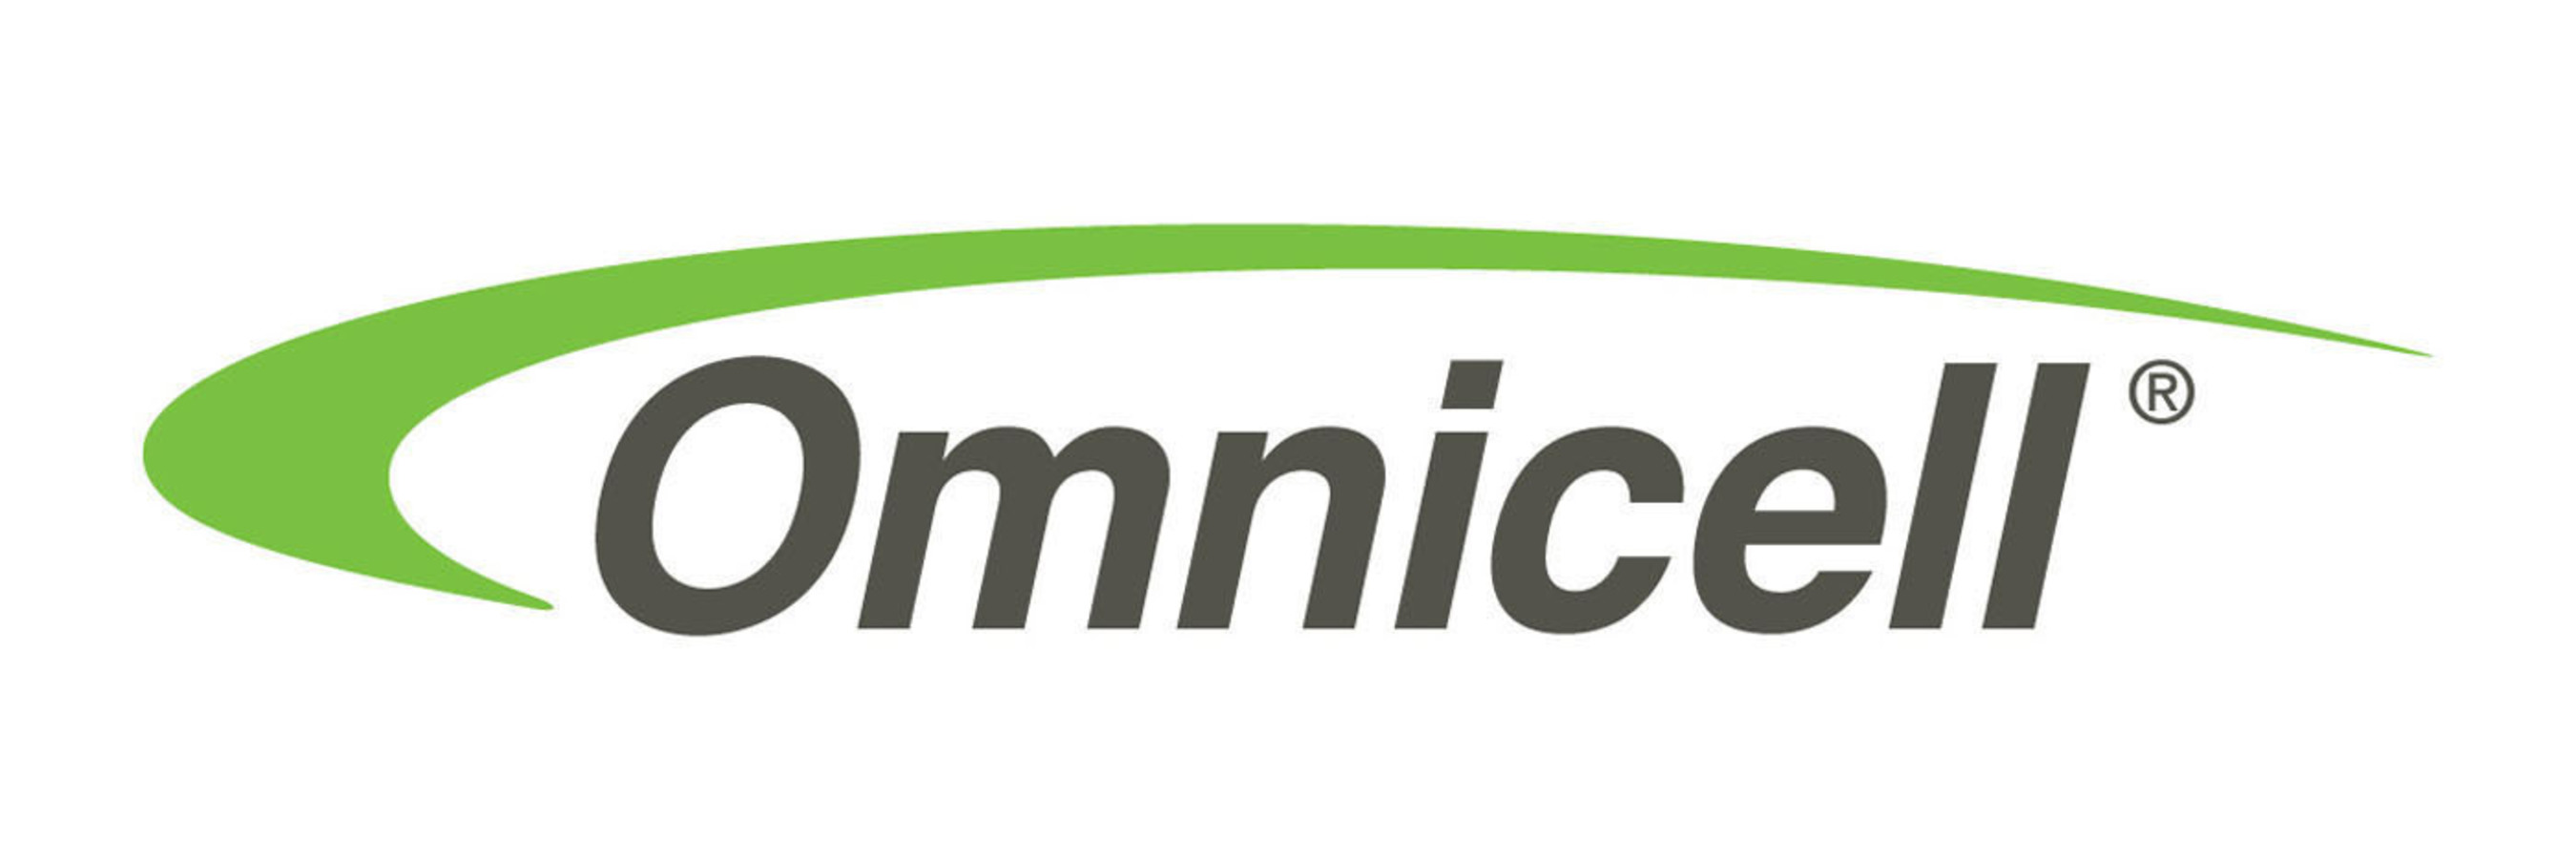 Omnicell, Inc. logo. (PRNewsFoto/Omnicell, Inc.) (PRNewsFoto/)